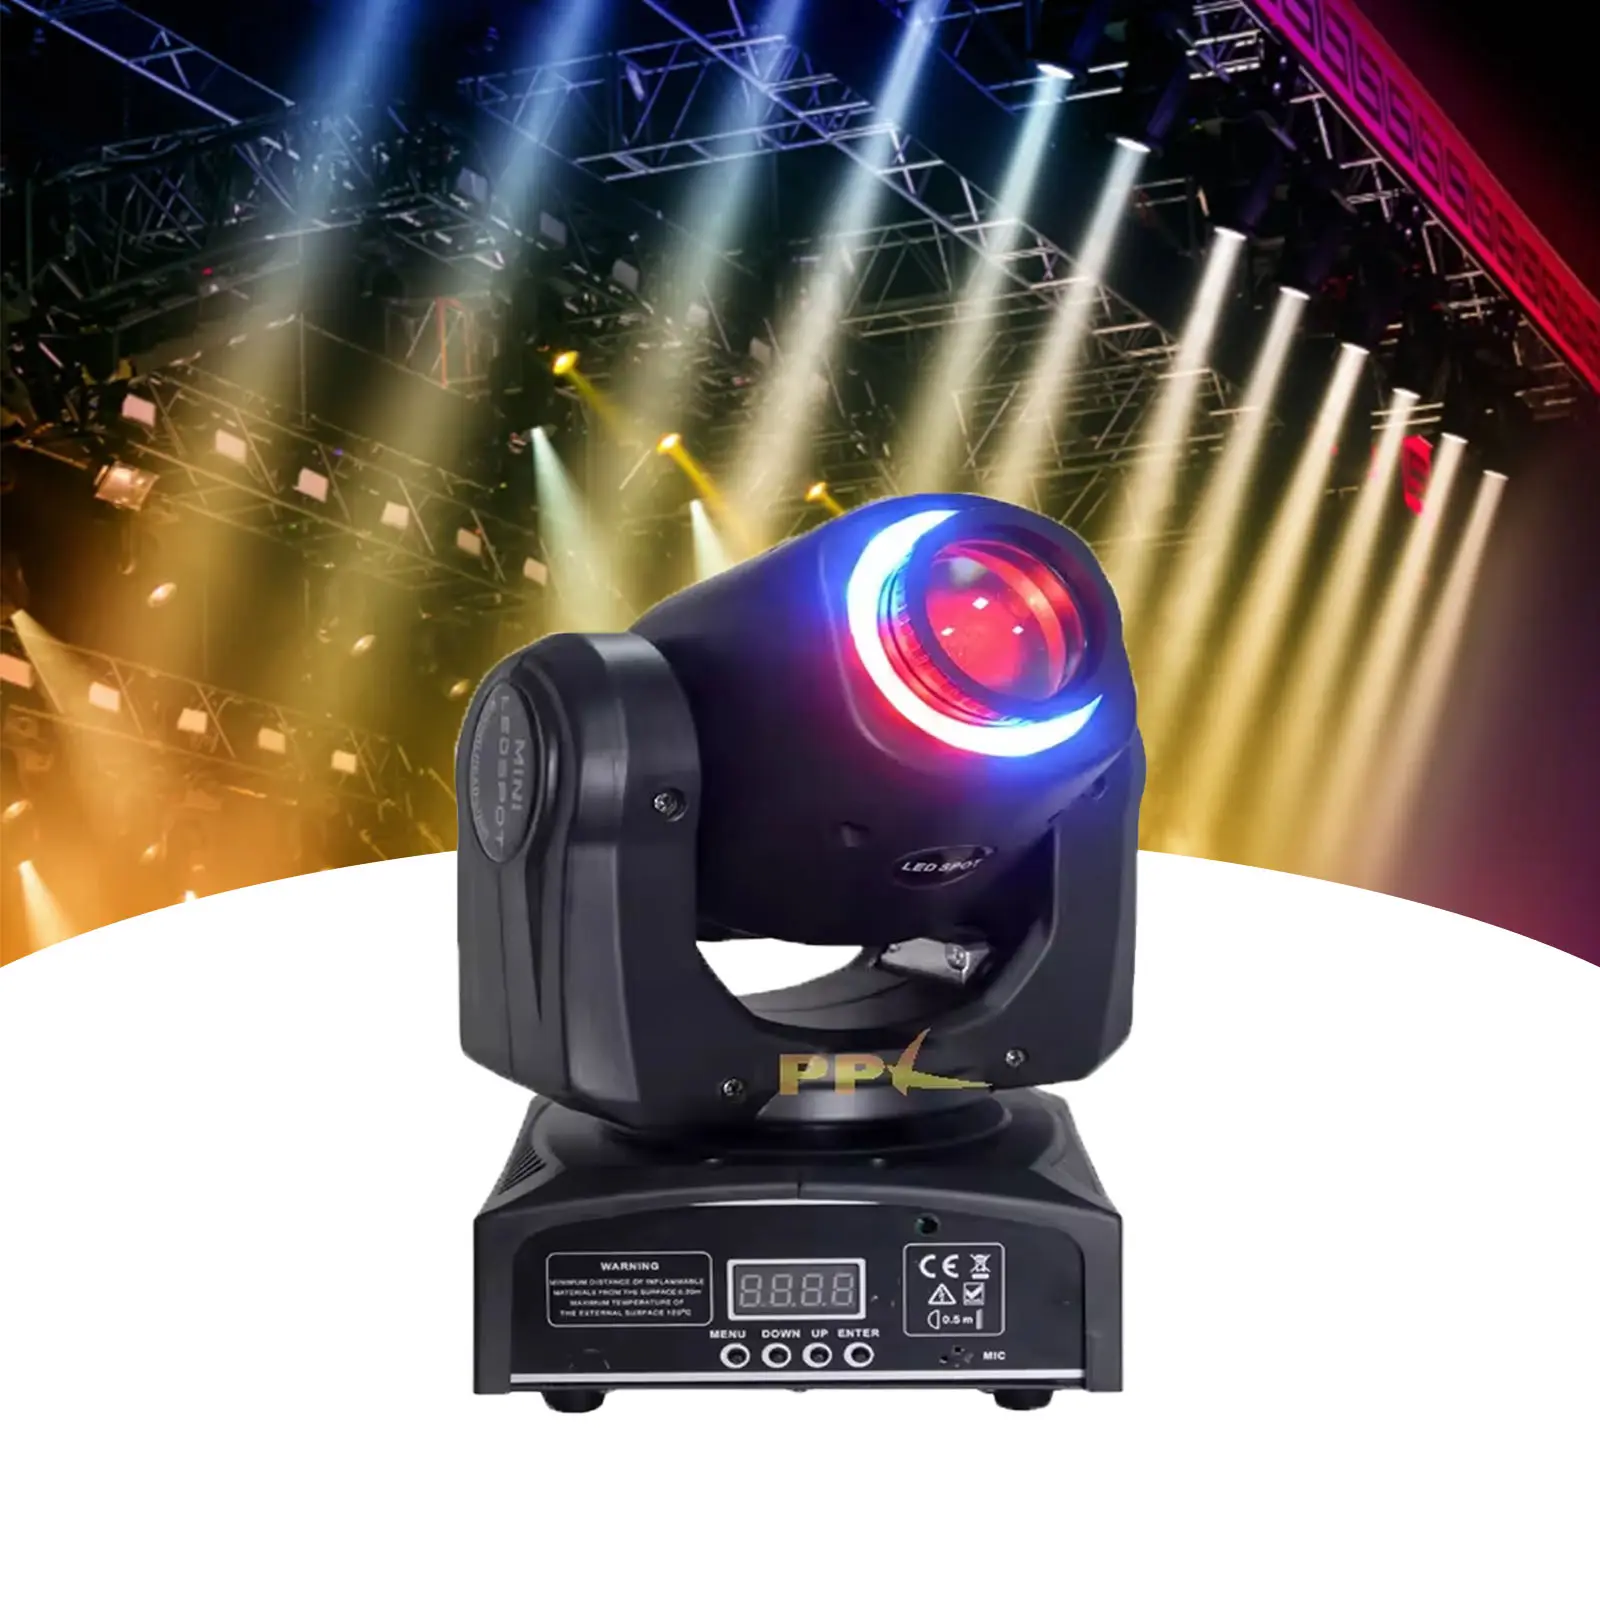 Novo Mini LED 30W para iluminação de palco, cabeça móvel 2 em 1, luz de palco com efeito arco-íris halo, iluminação ideal para palco de discoteca